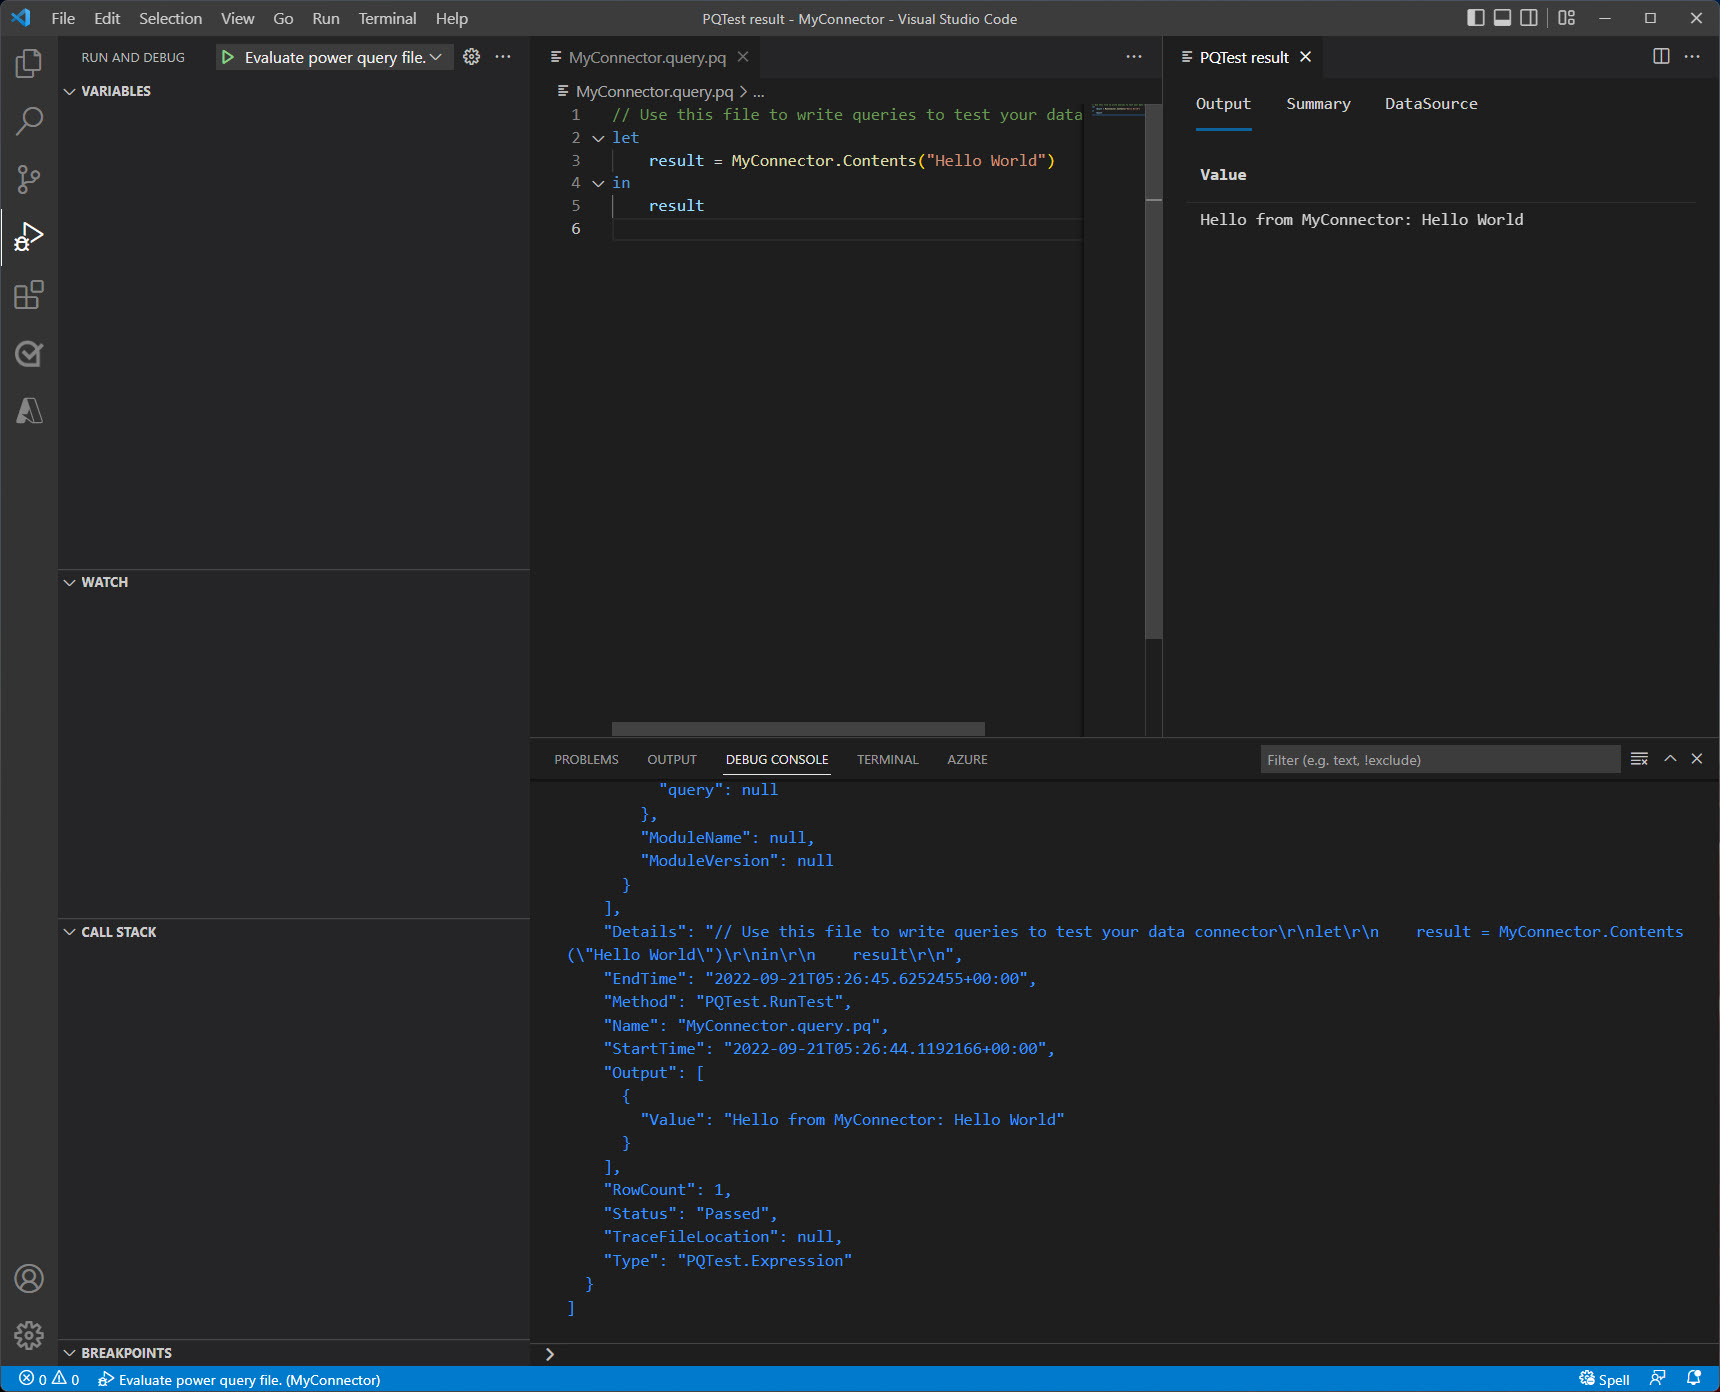 A janela do Visual Studio Code após a avaliação foi finalizada mostrando a saída no console e no painel de resultados.